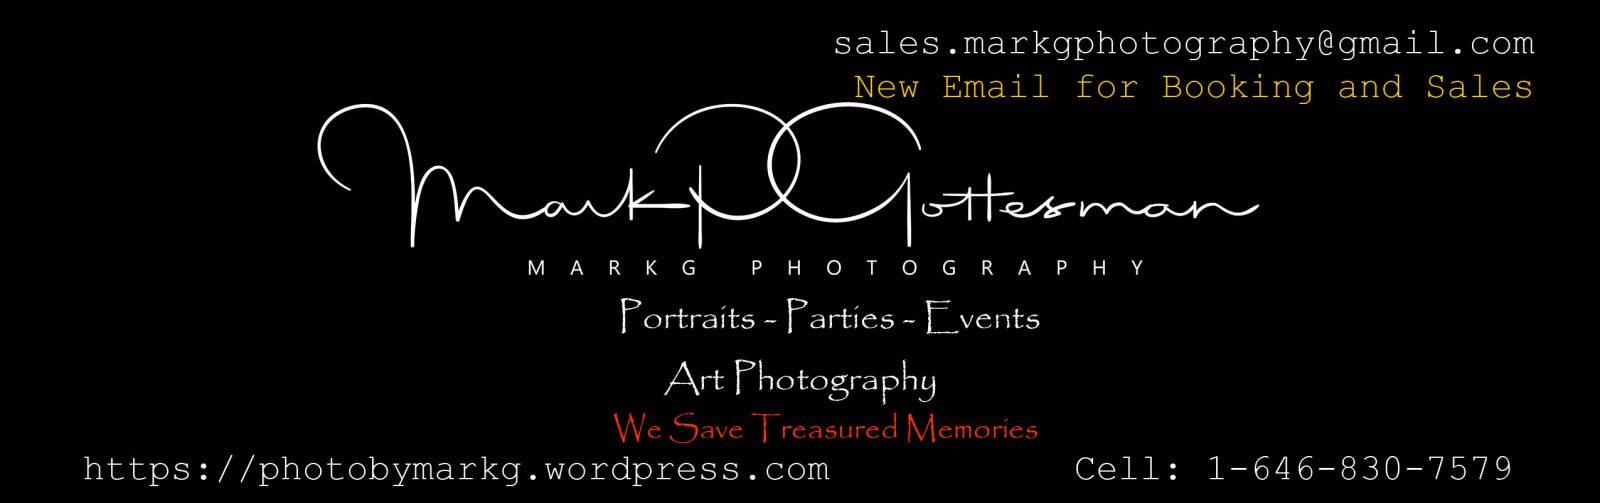 MarkG-Photography